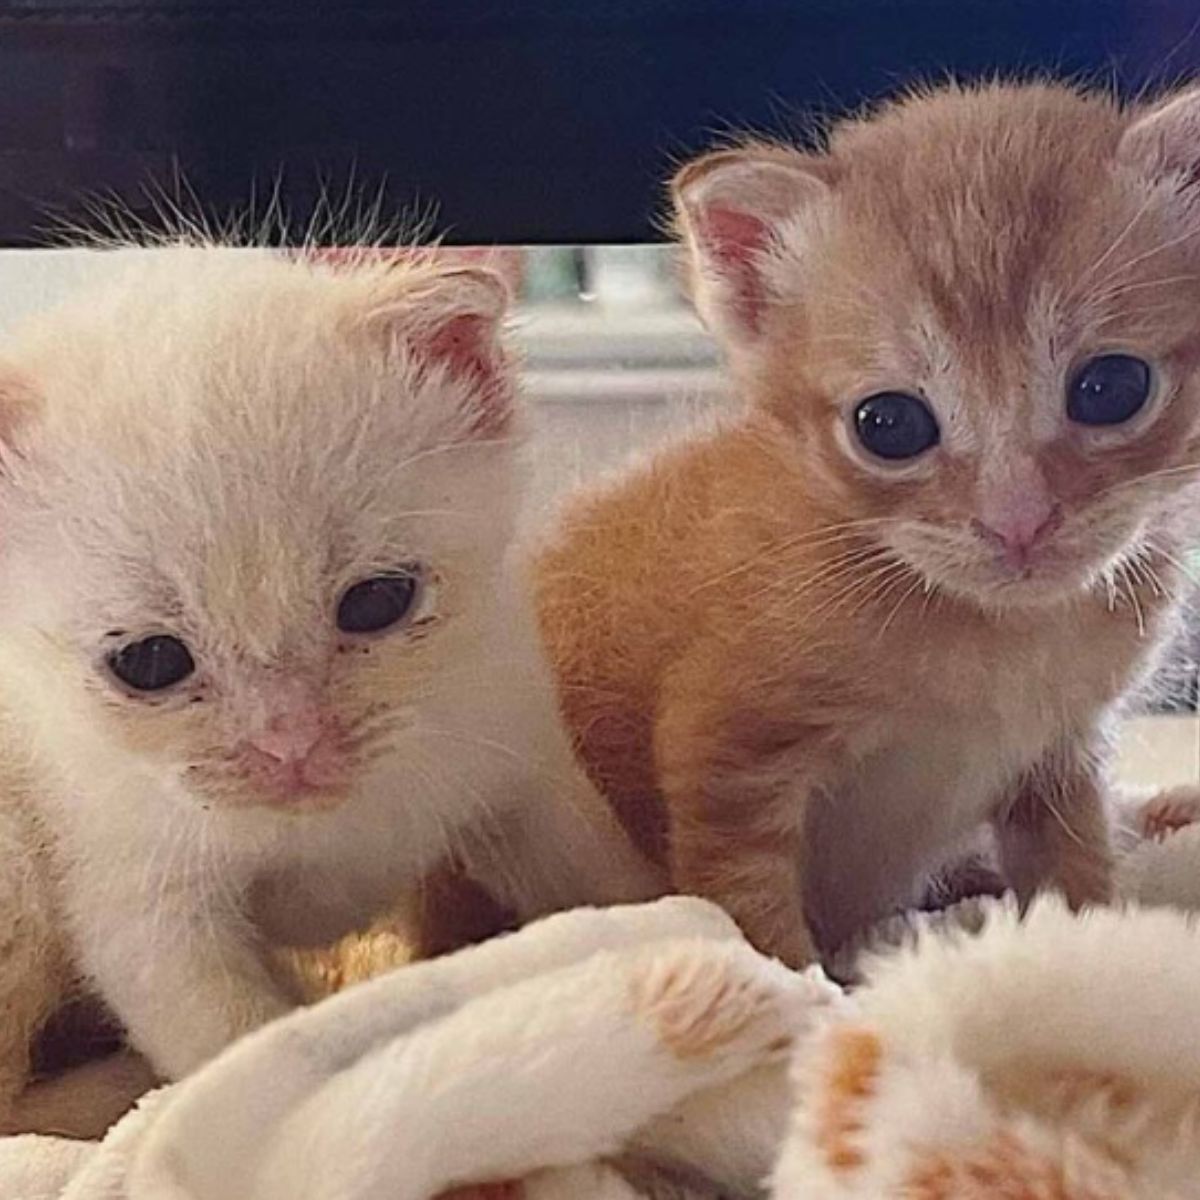 two cute kittens